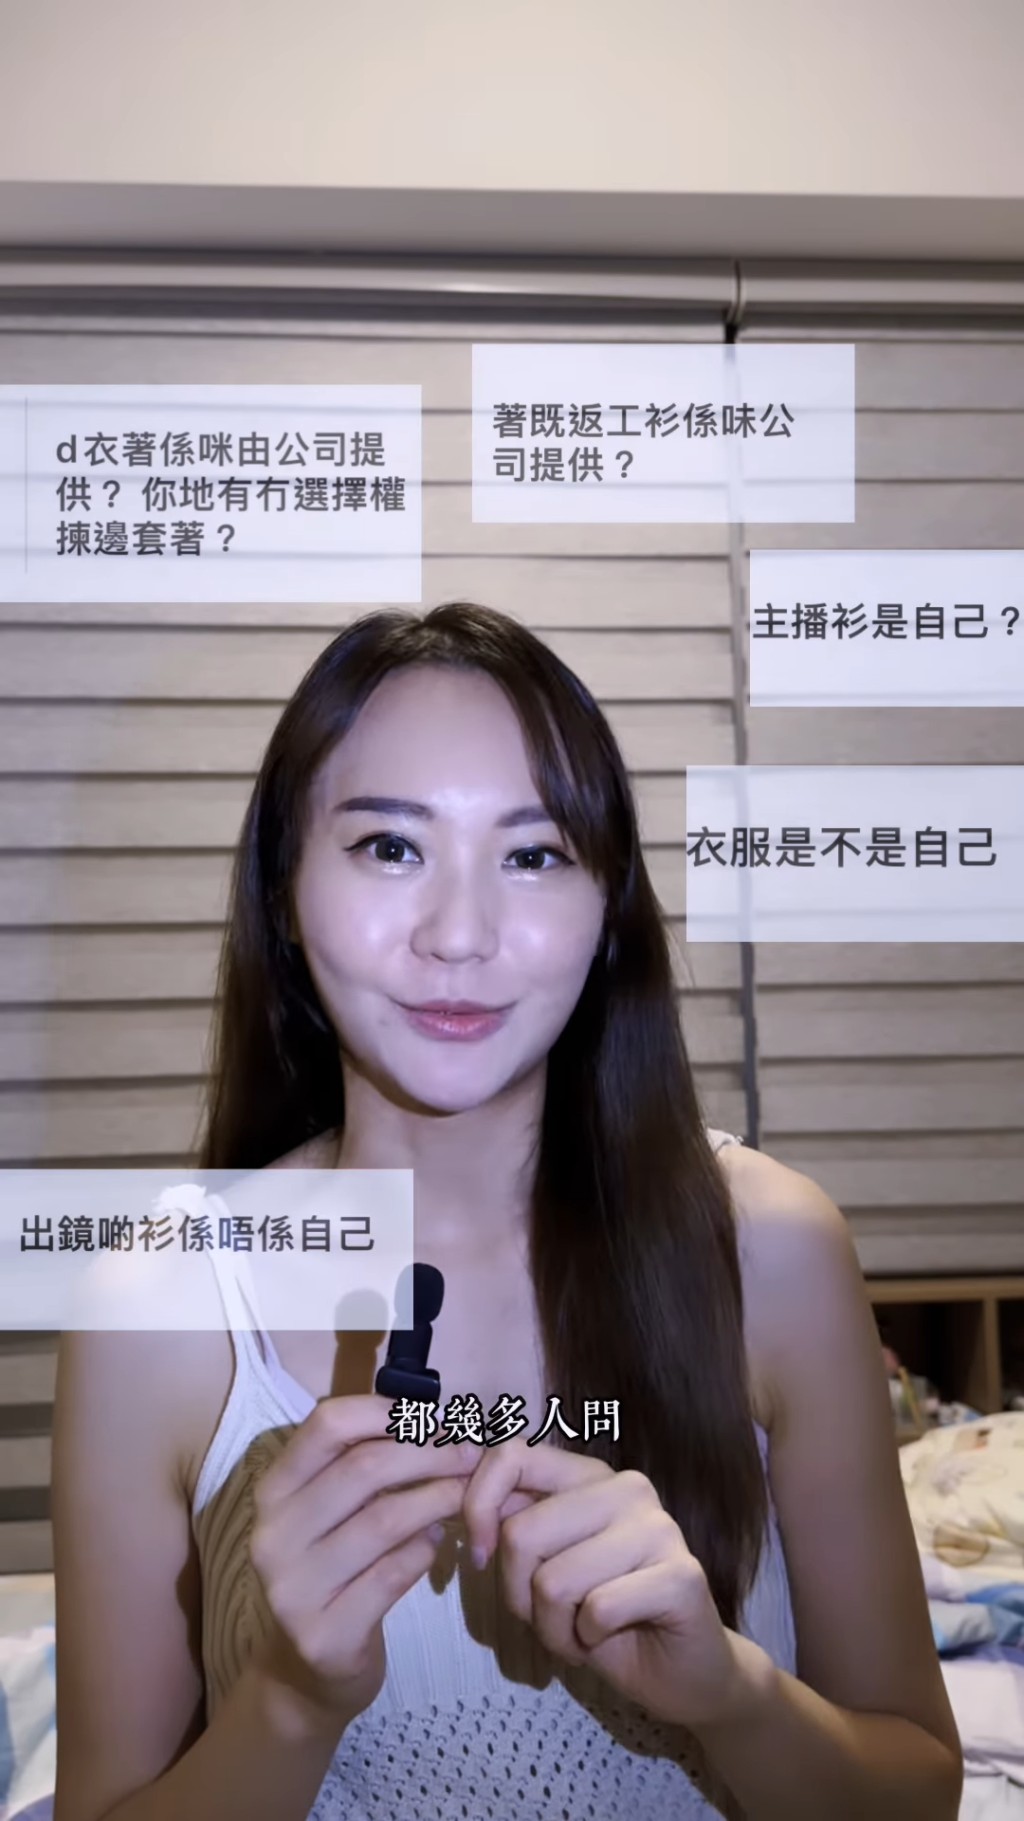 她又透露原來TVB有提供服飾。